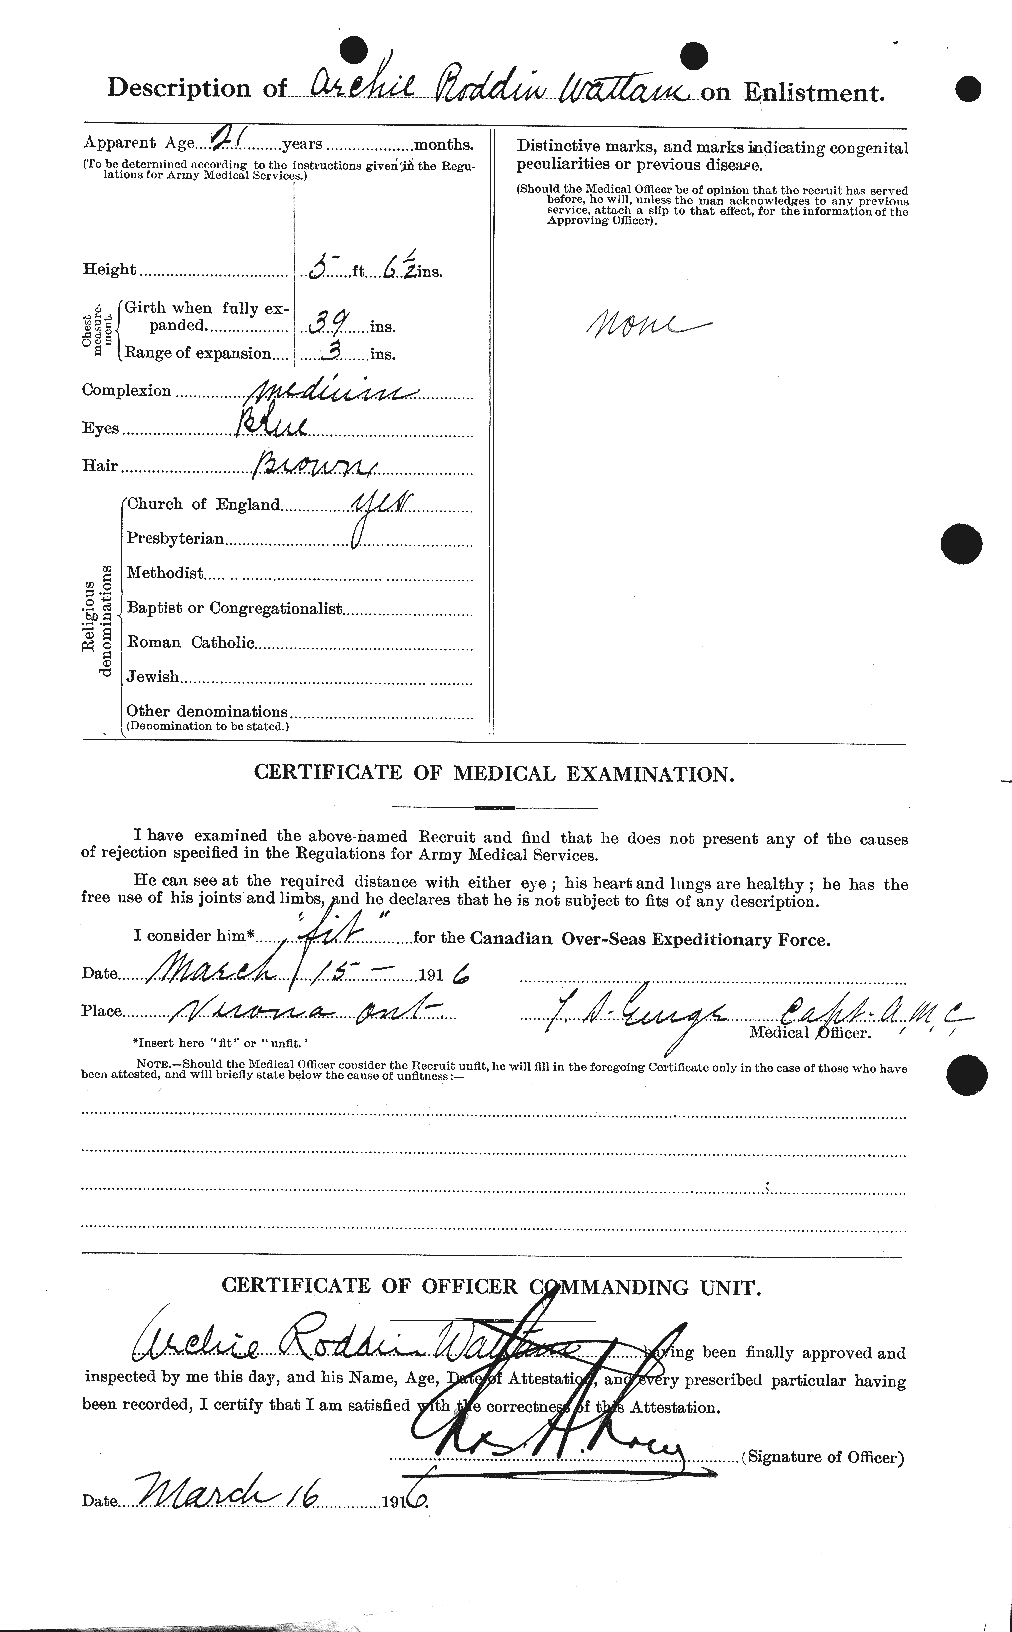 Dossiers du Personnel de la Première Guerre mondiale - CEC 660584b